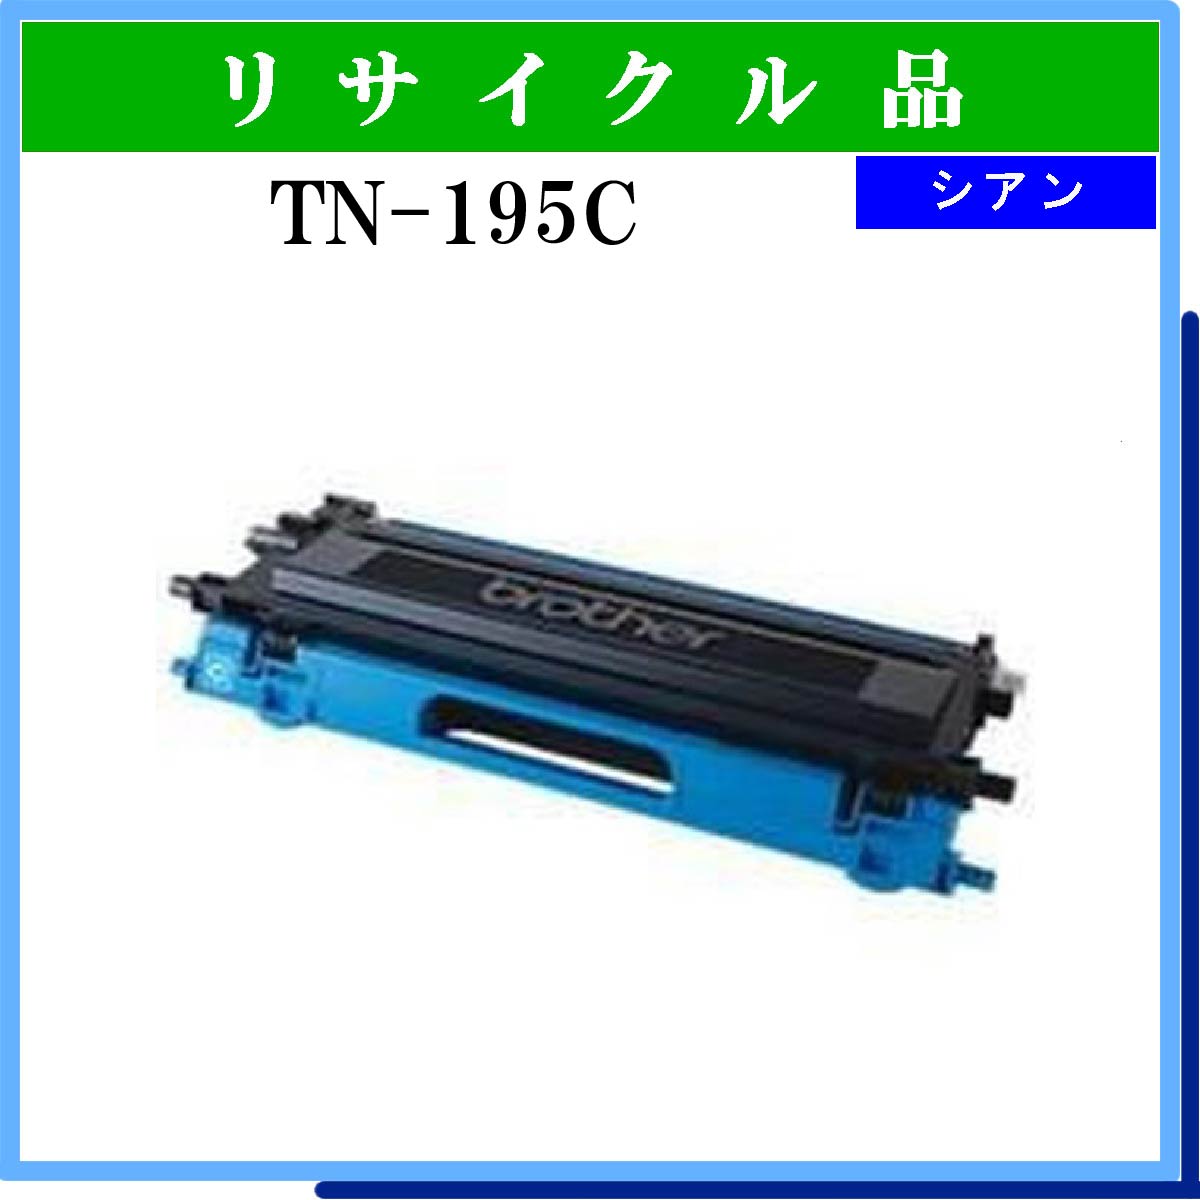 TN-195C